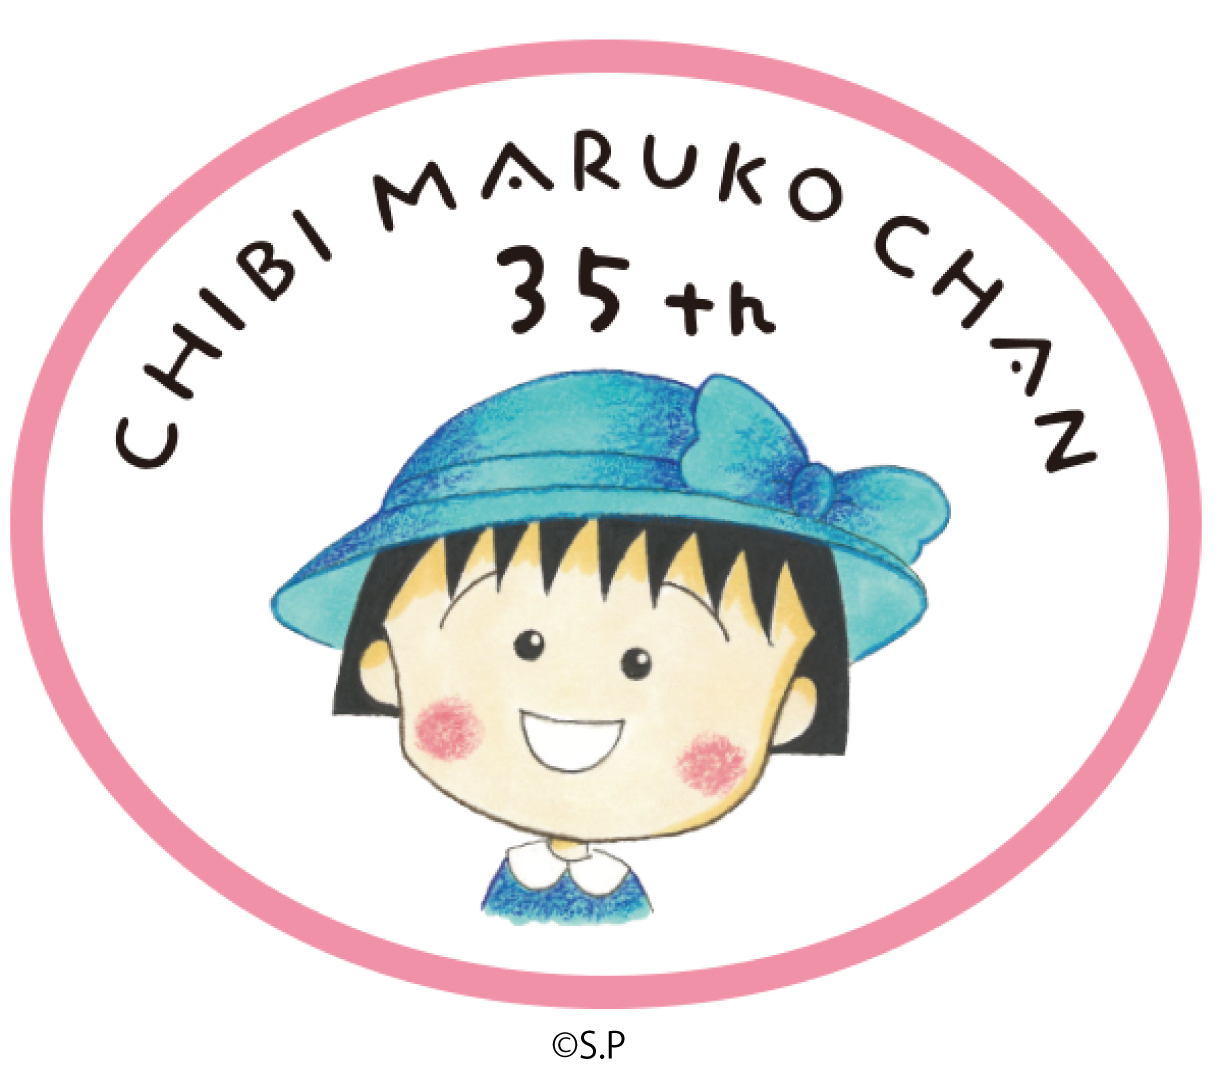 CHIBI MARUKO CHAN 35th ANNIVERSARY Nuт܂qv͌35N}܂ 2022N܂Ŋy悪߂뉟I